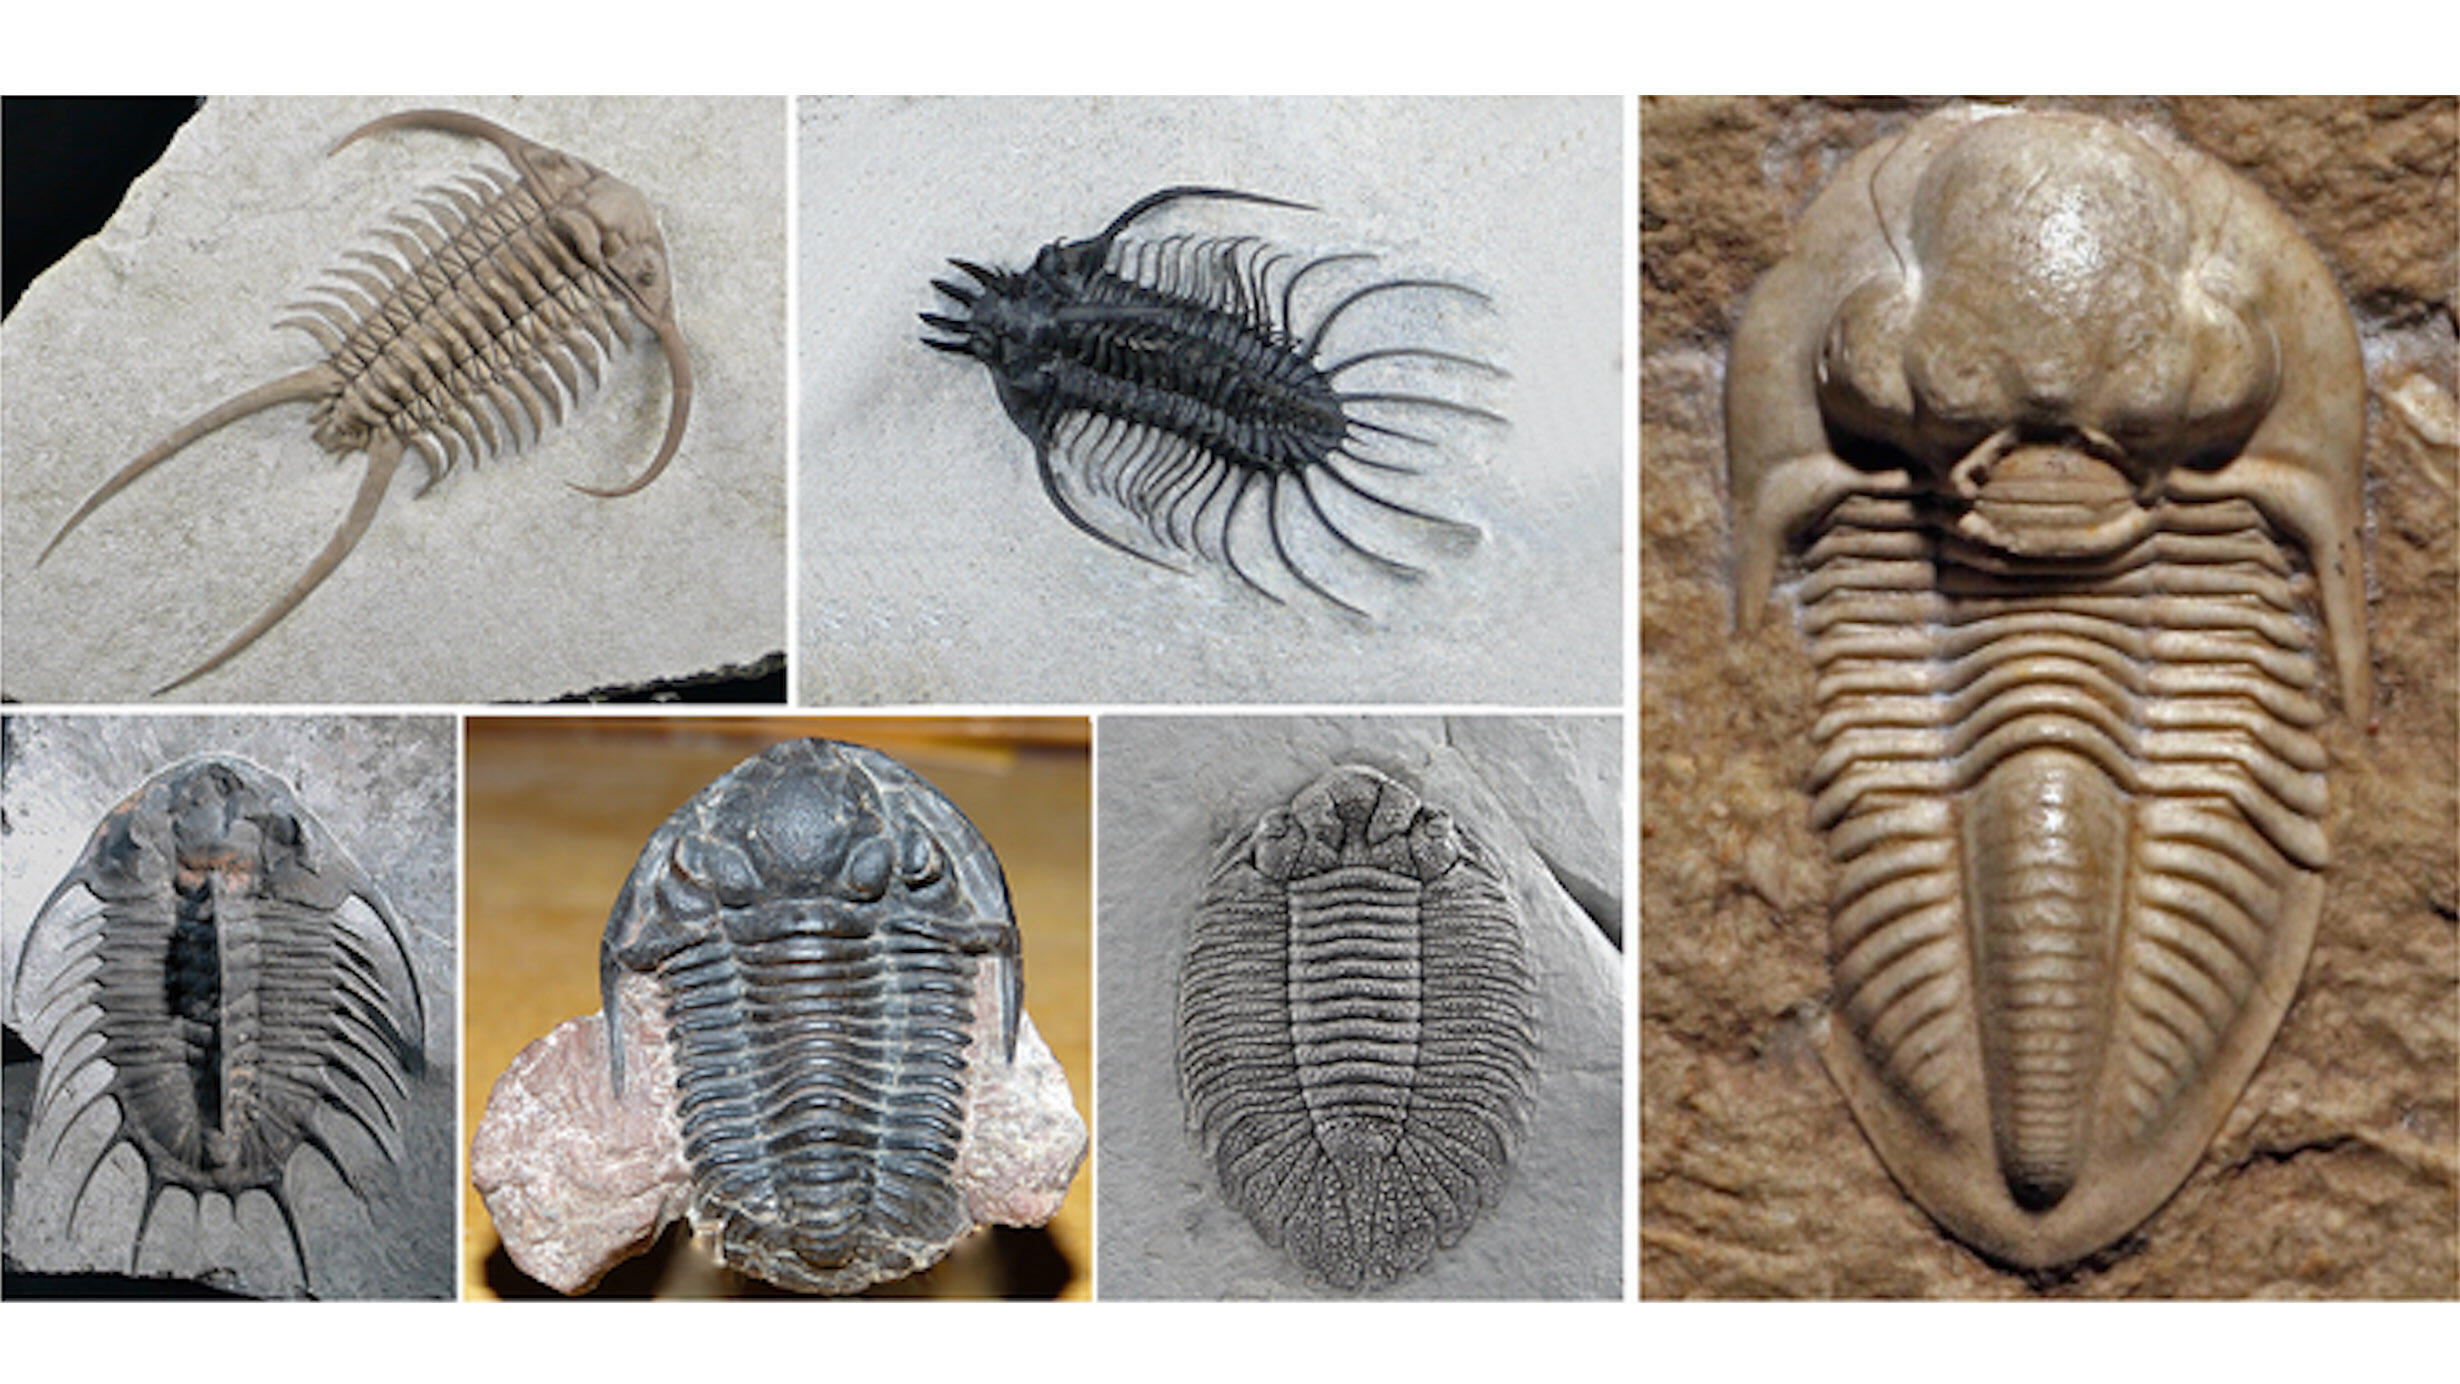 Trilobite specimens